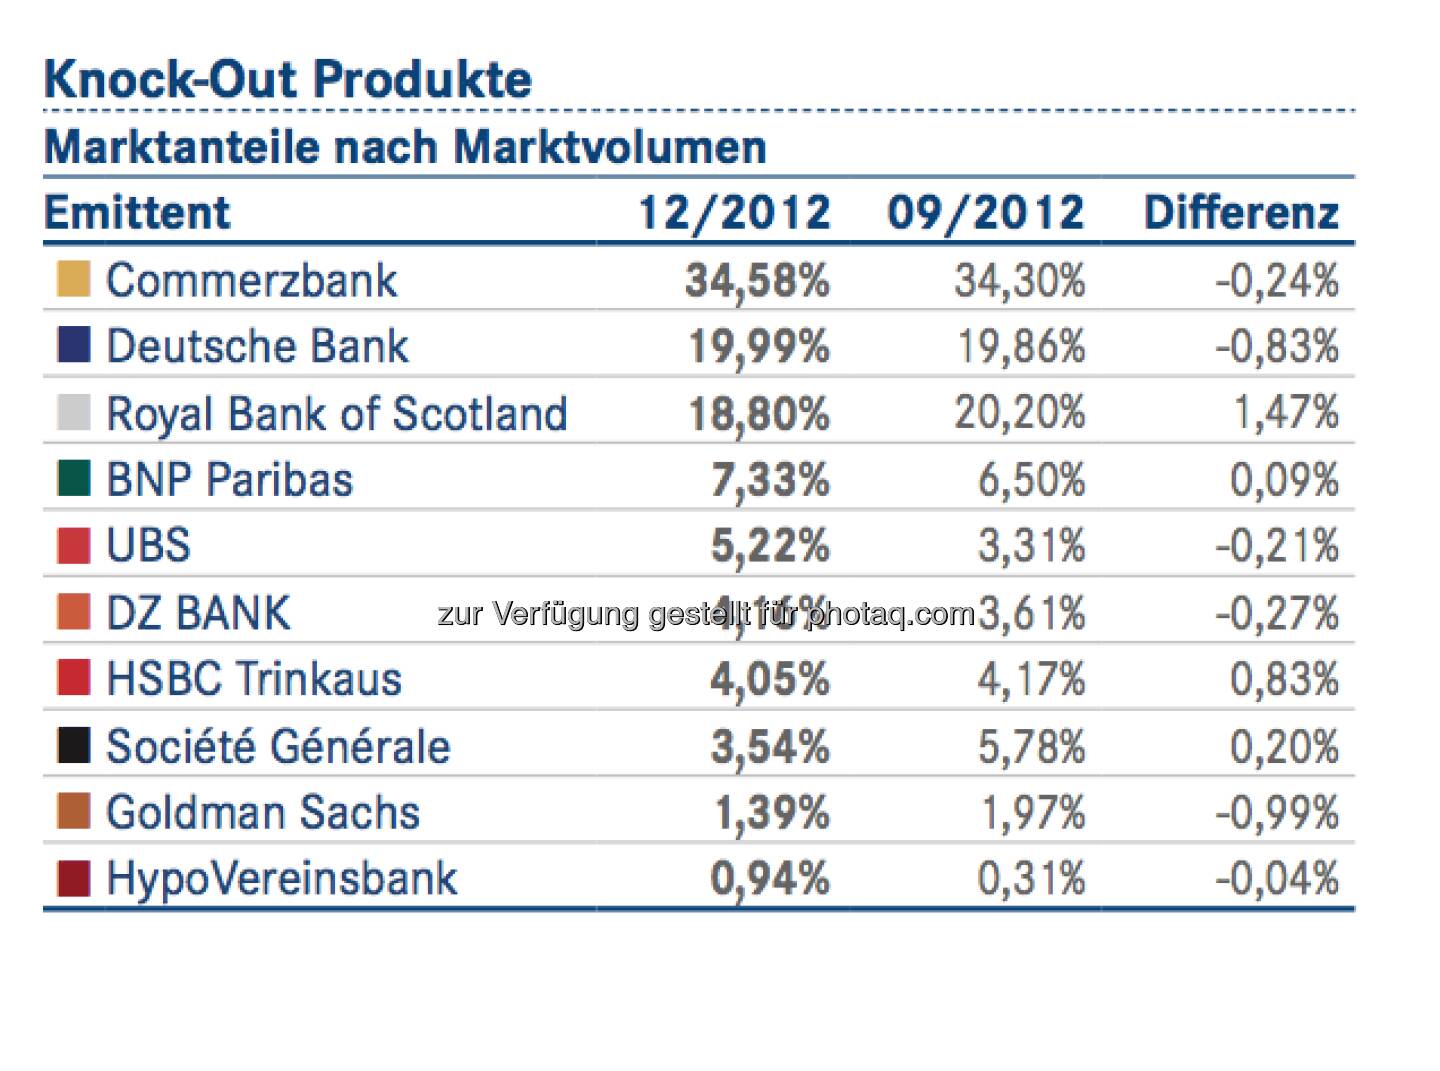 DDV-Statistik Ende 2012: Commerzbank bei Knock-Out-Produkten vorne